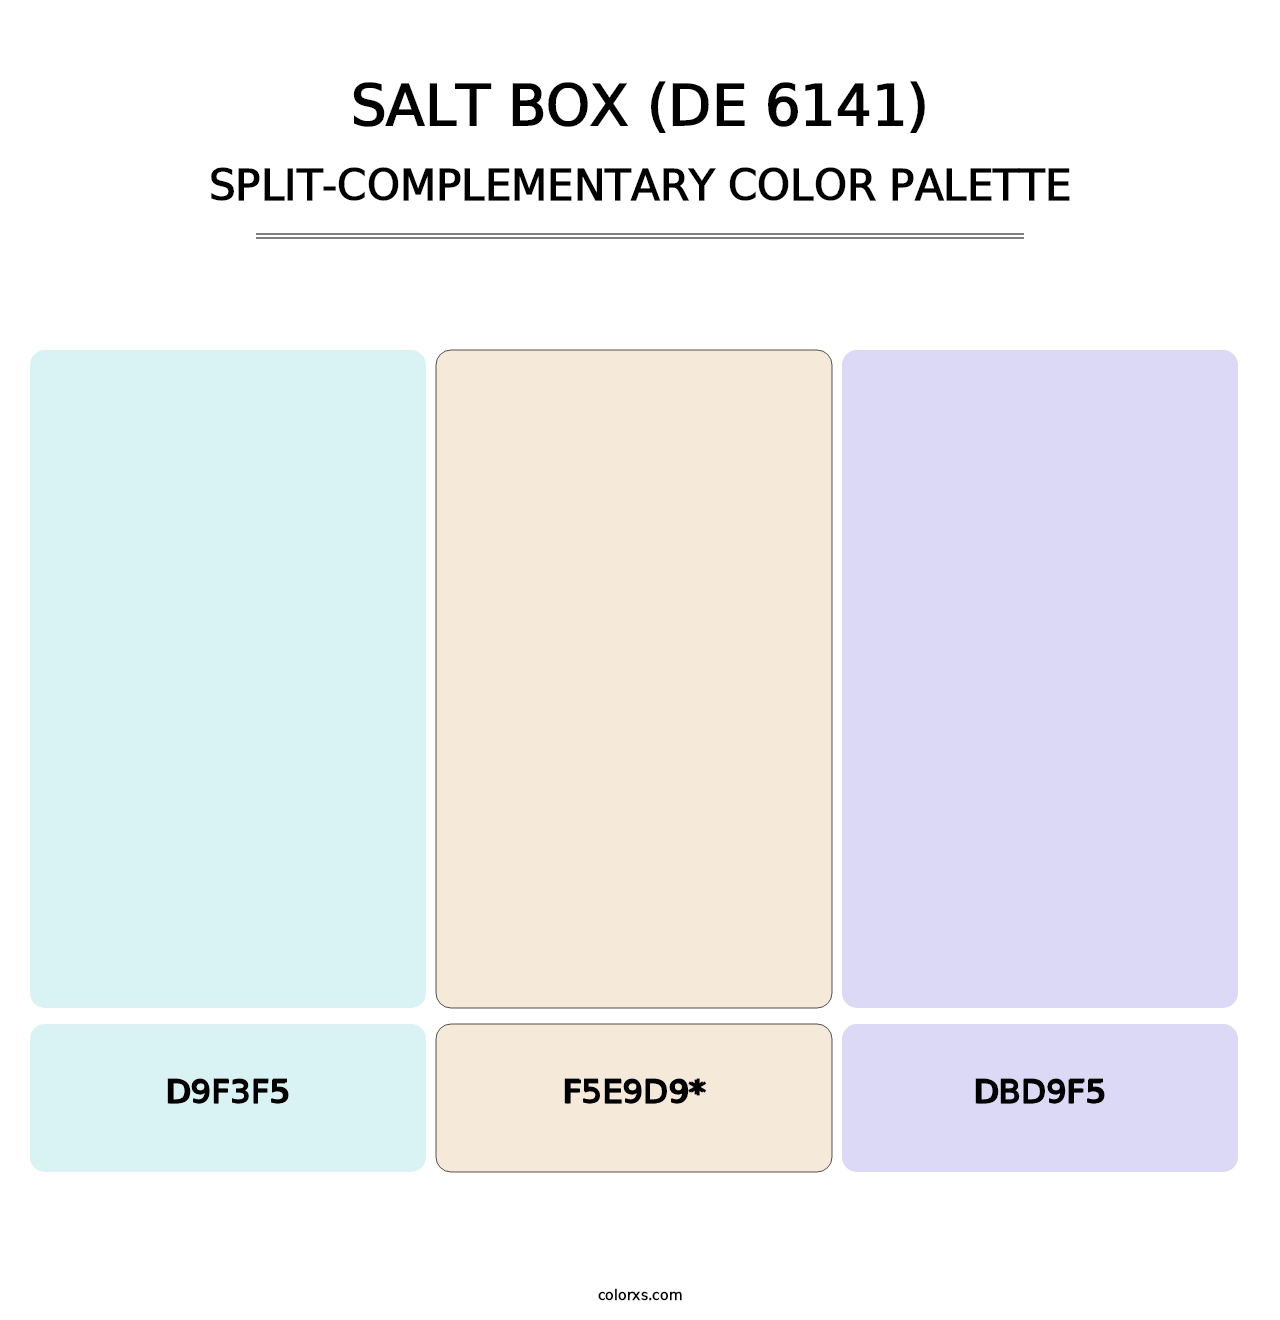 Salt Box (DE 6141) - Split-Complementary Color Palette